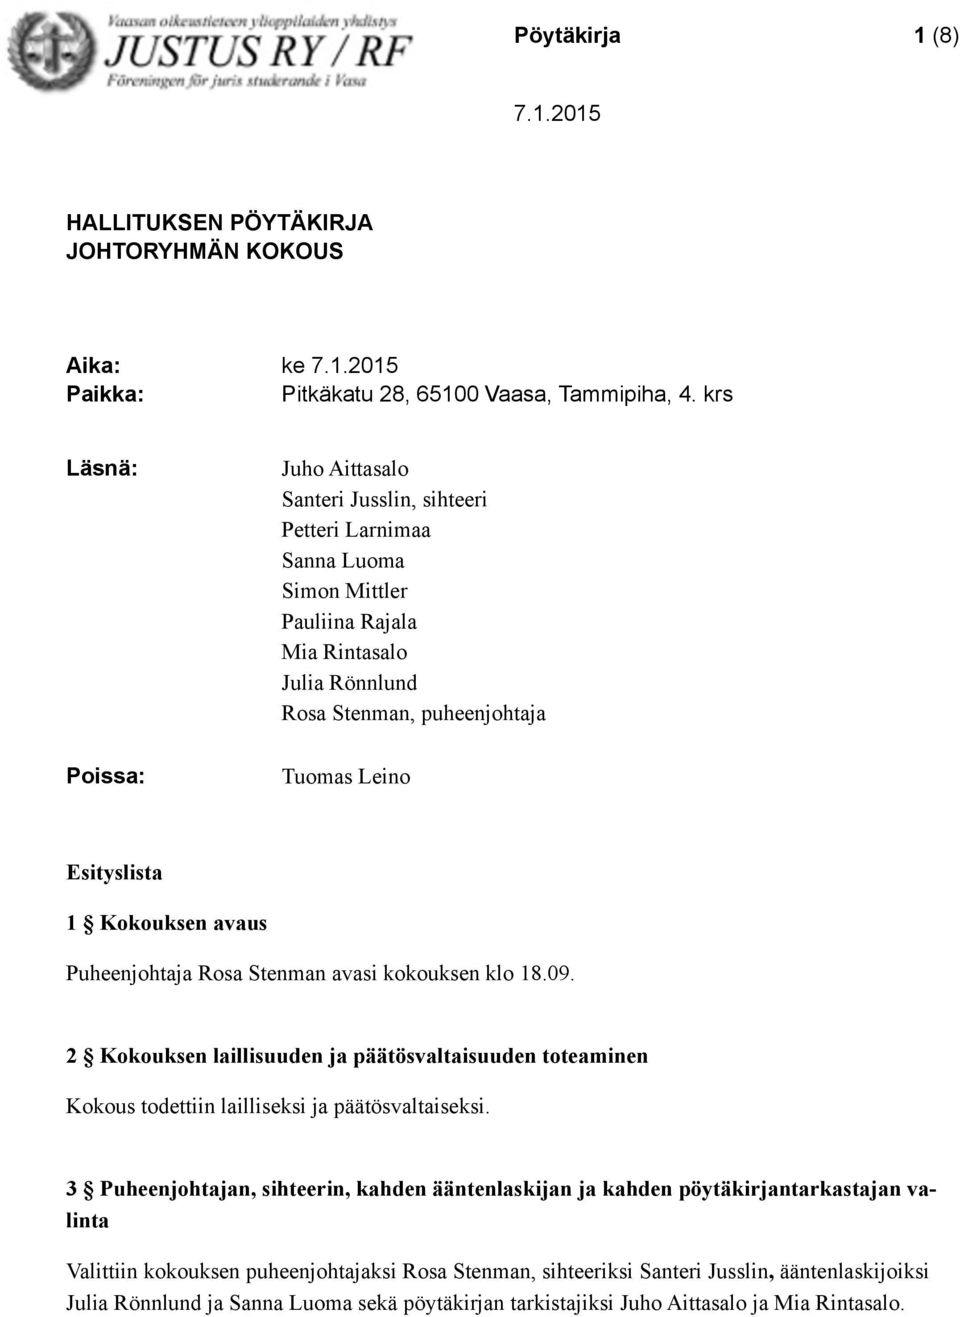 puheenjohtaja Tuomas Leino Puheenjohtaja Rosa Stenman avasi kokouksen klo 18.09. 2 Kokouksen laillisuuden ja päätösvaltaisuuden toteaminen Kokous todettiin lailliseksi ja päätösvaltaiseksi.